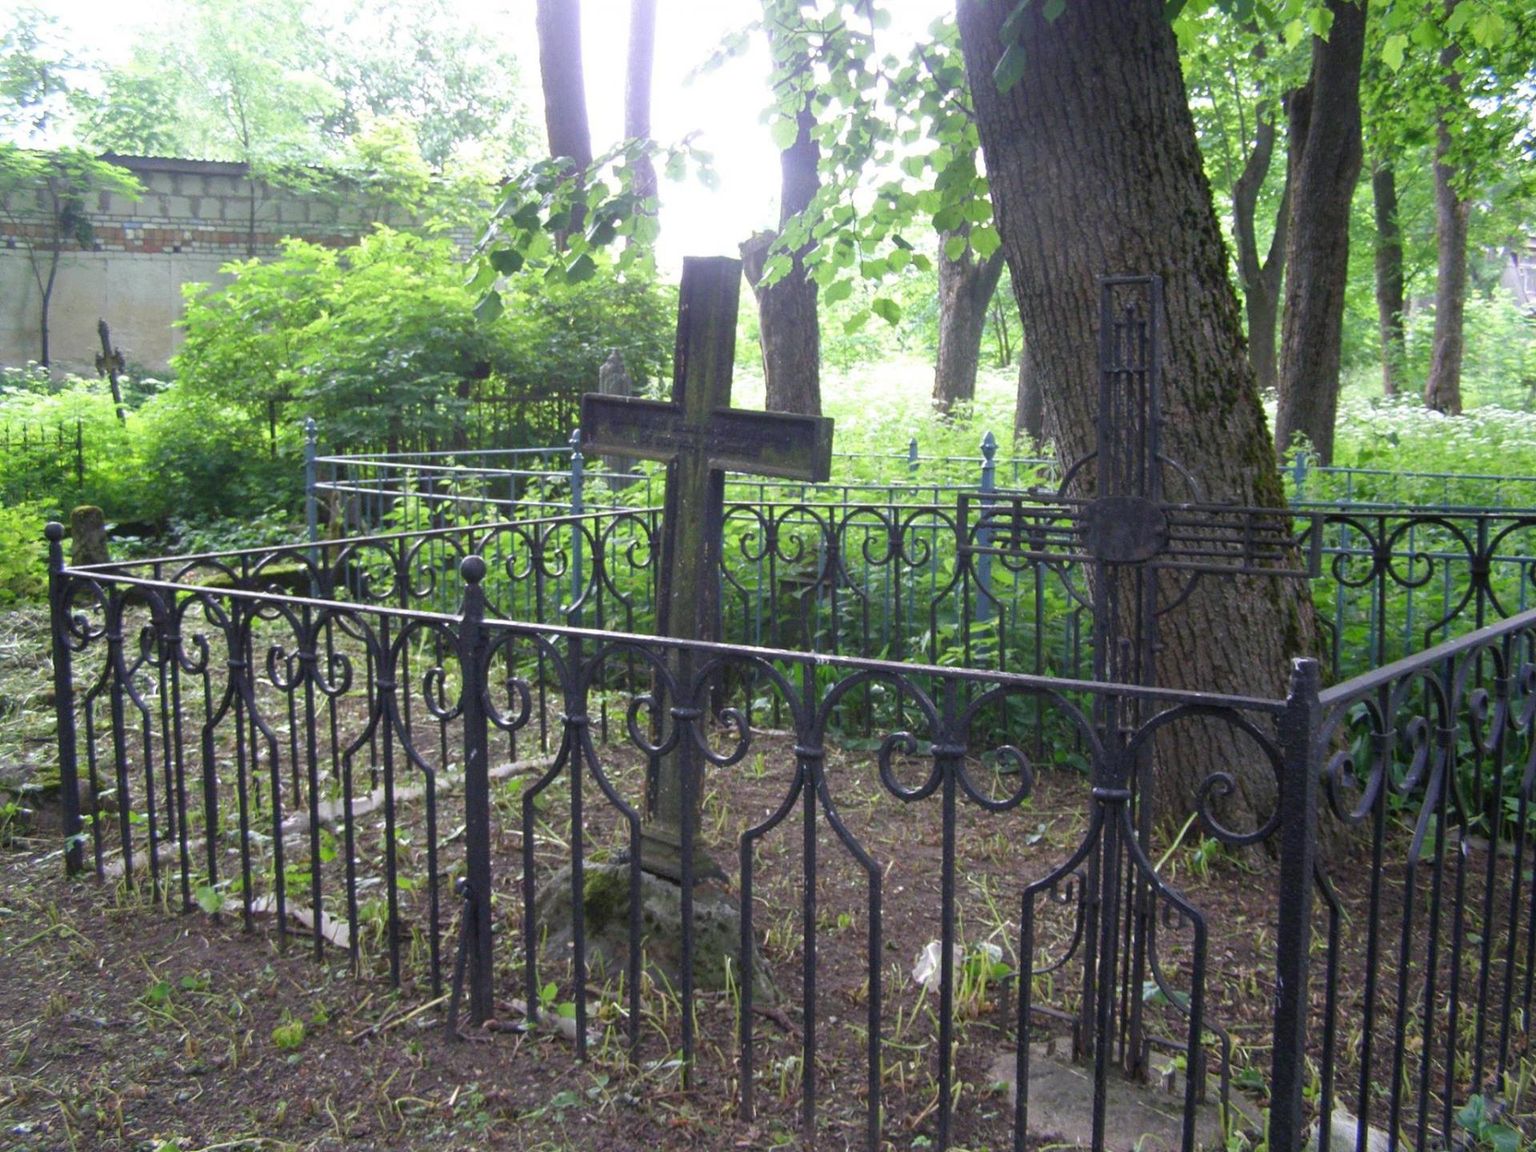 Tapa valla uus kalmistueeskiri kehtib matmiseks avatud kalmistutel. Tapa vana kalmistu (fotol) kohta kõnealune eeskiri ei kehti.